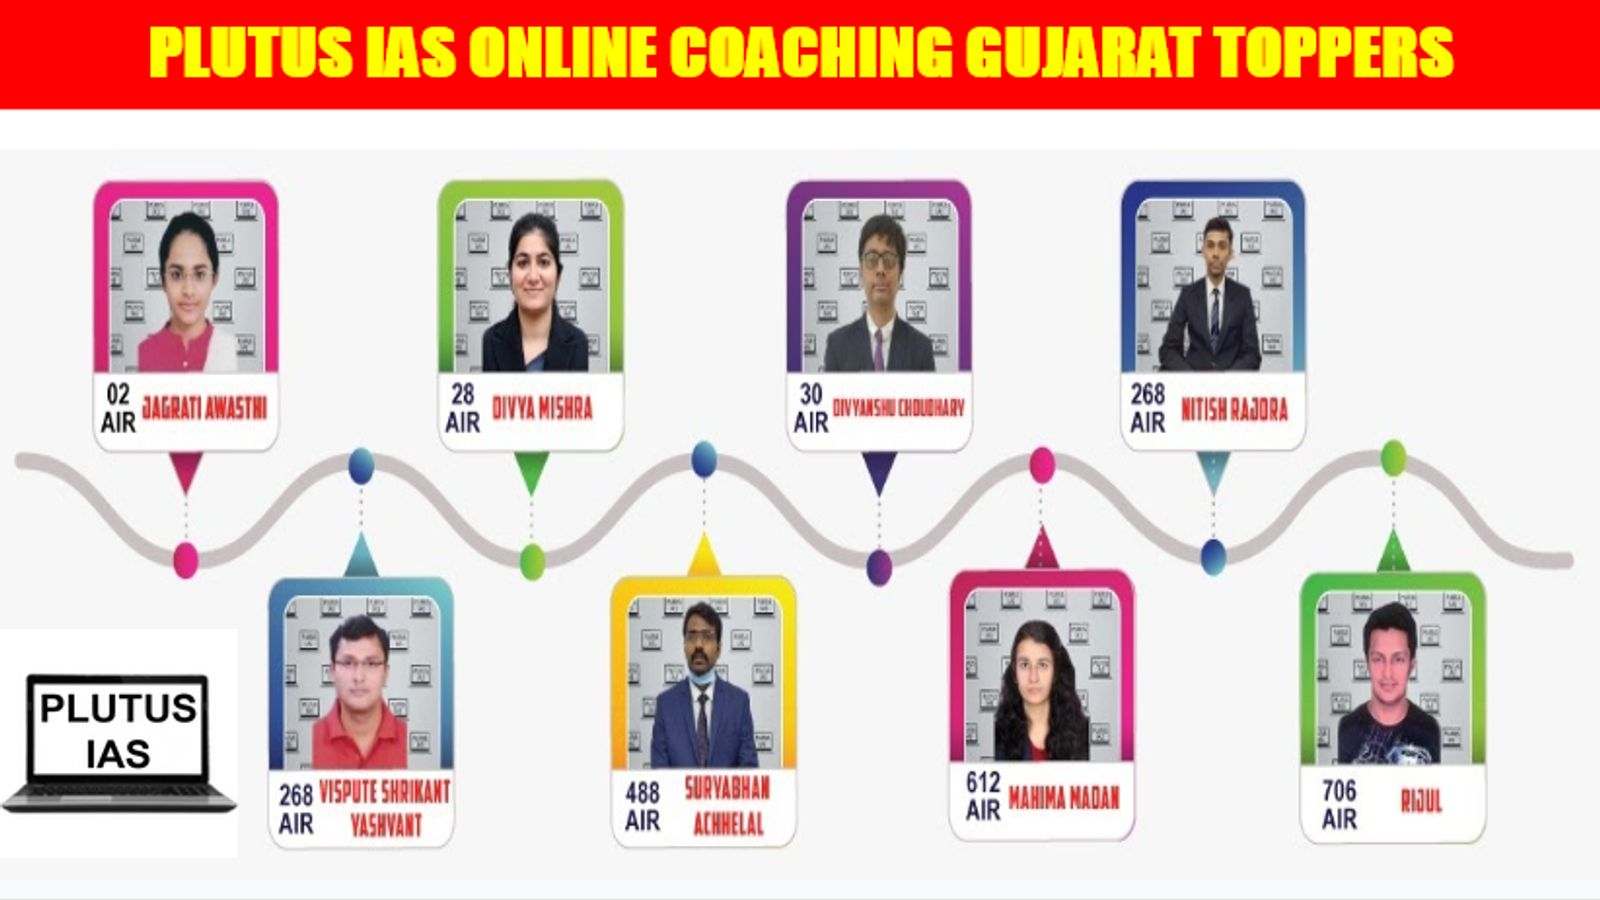 Plutus IAS Online Coaching Gujarat Toppers